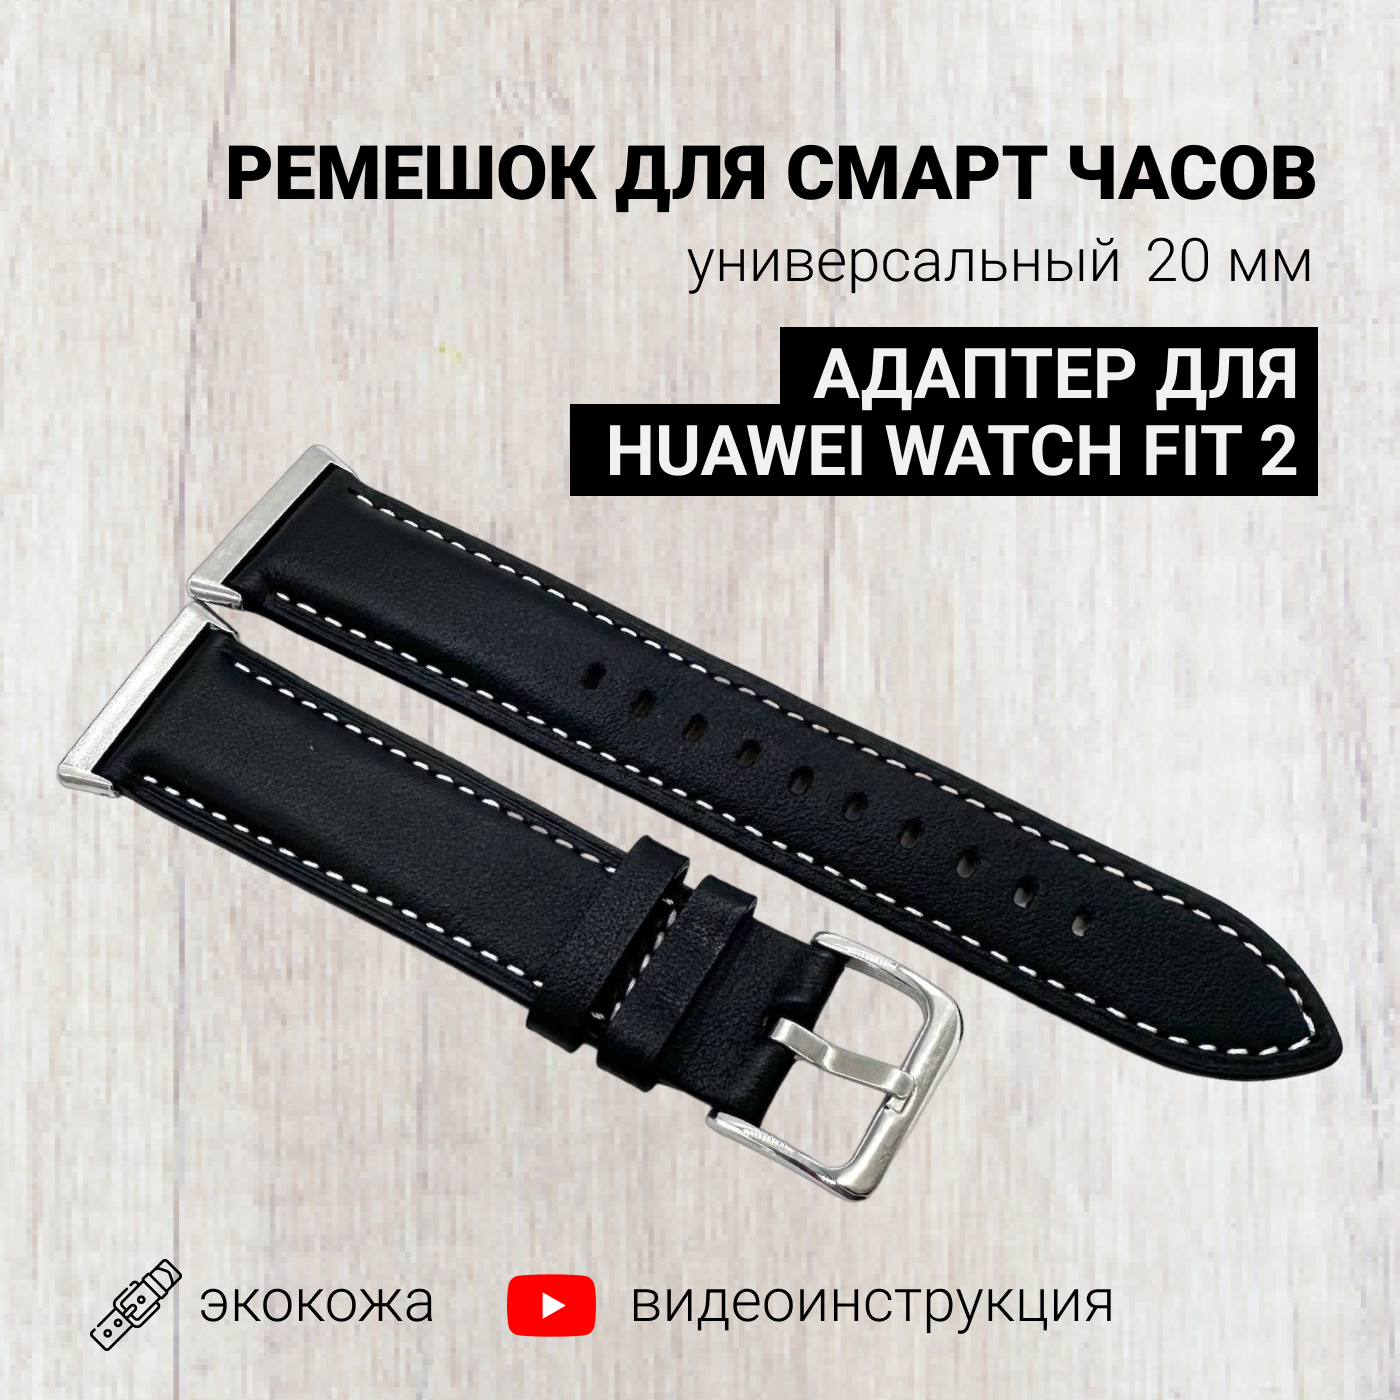 Ремешок для смарт часов 20мм экокожа с адаптером для Huawei Watch Fit 2, экокожа, черный, кожаный браслет для умных часов